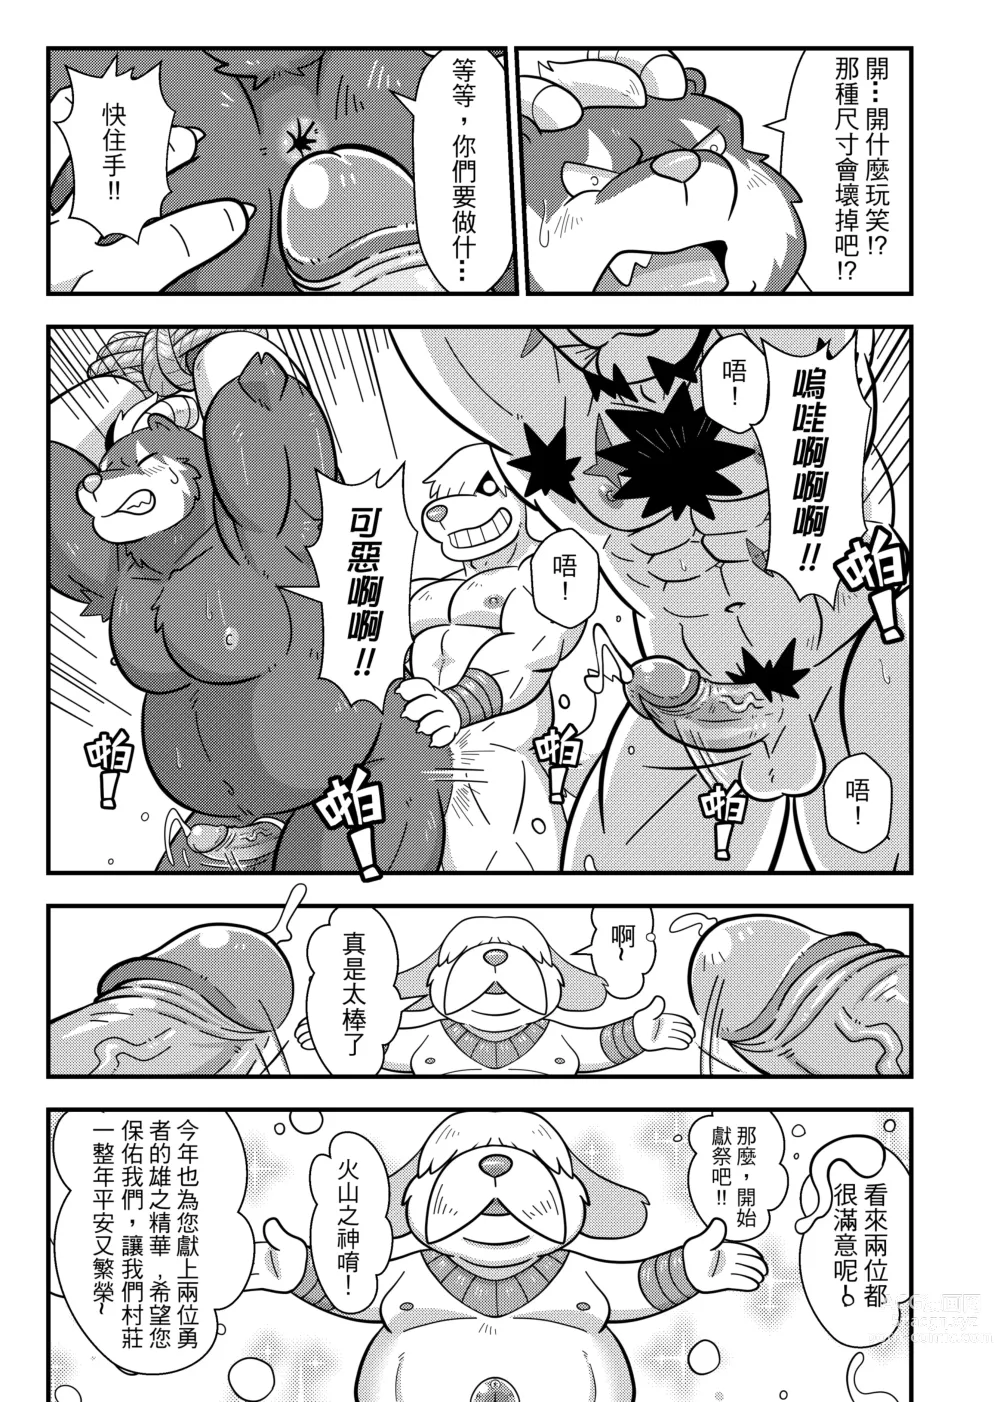 Page 26 of doujinshi 勇者的大小只有魔王塞得下4